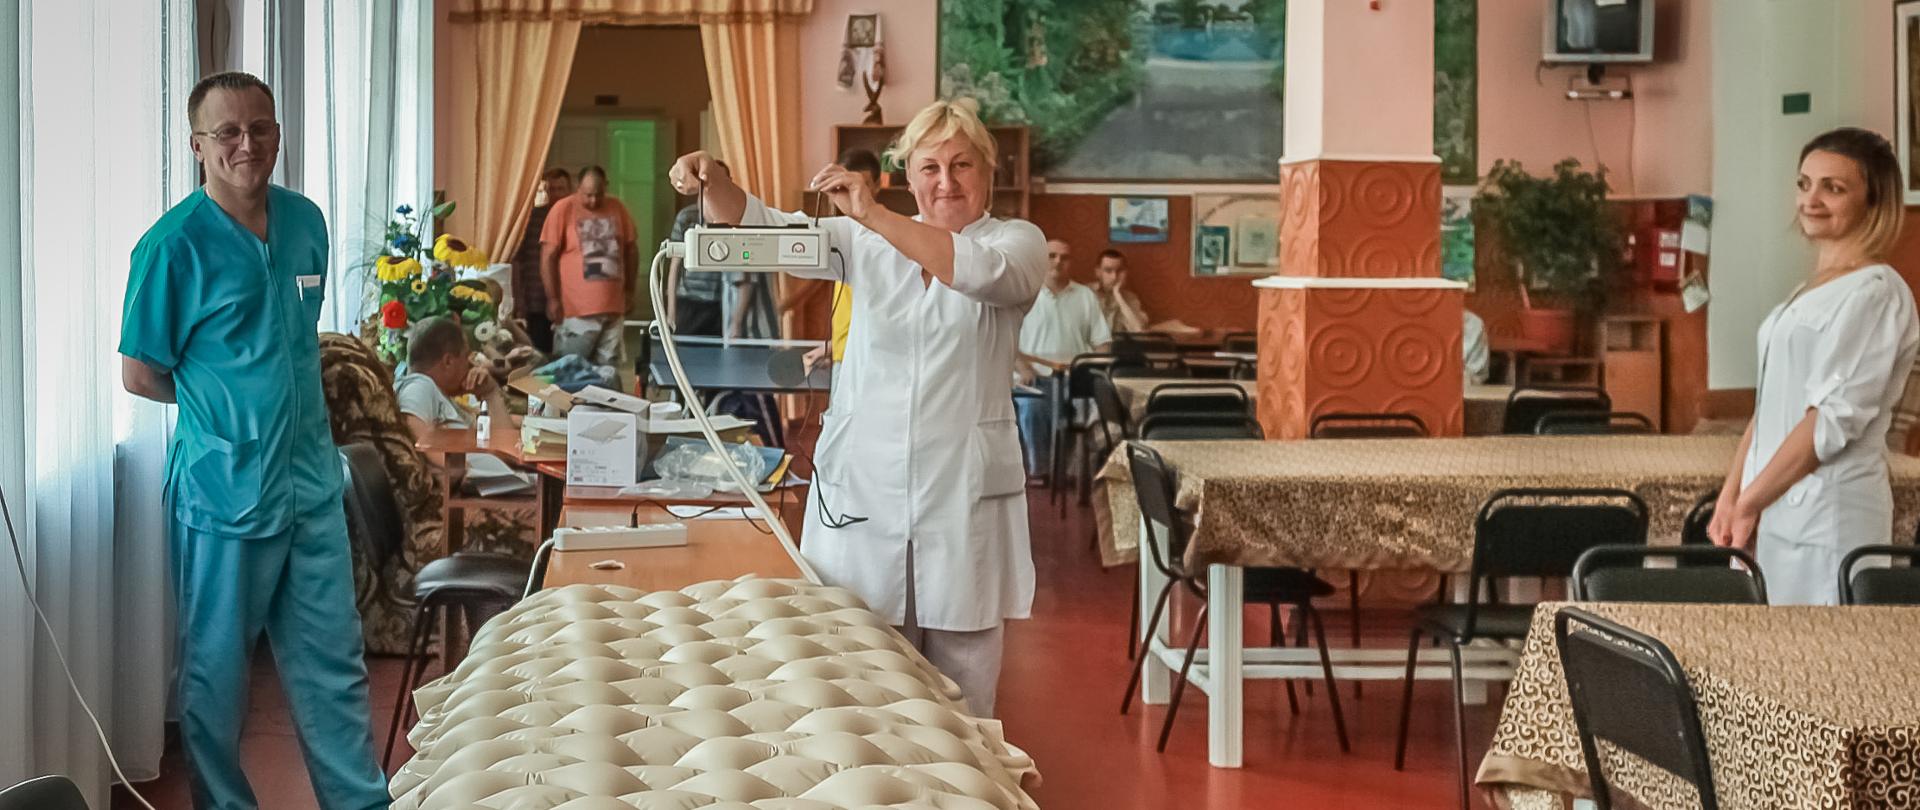 kadra medyczna ośrodka prezentuje materac przeciodleżynowy z naklejką Polskiej pomocy